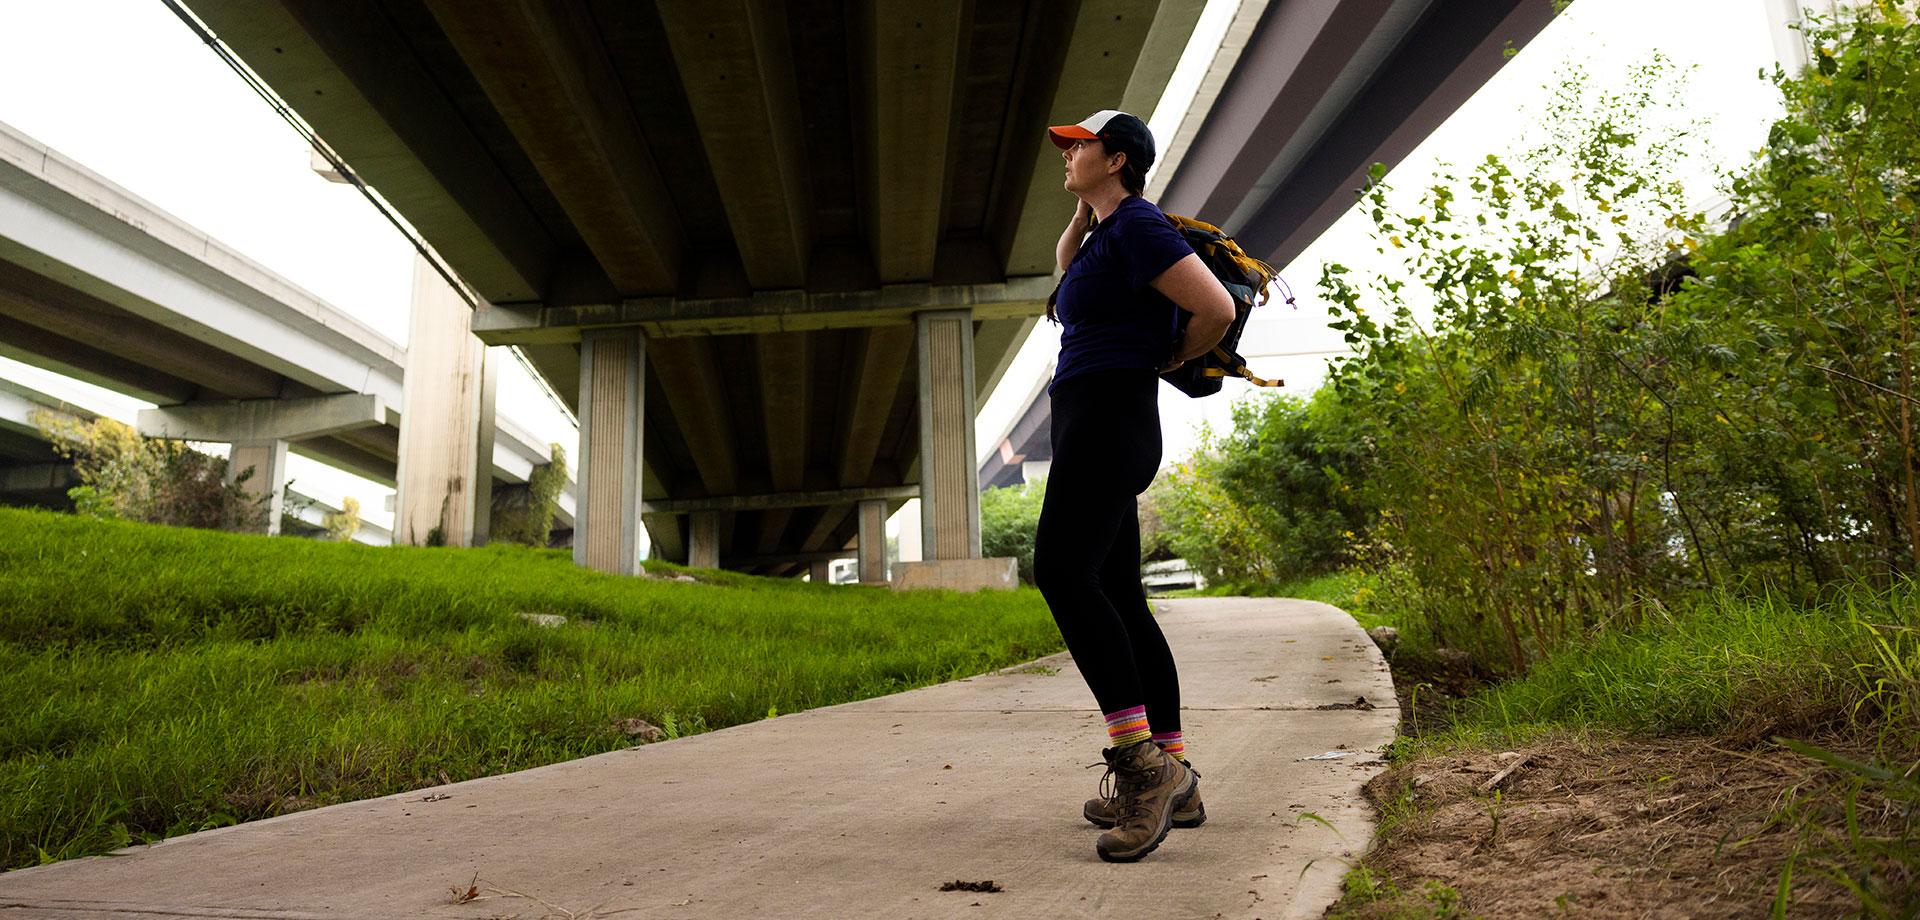 Abdelraoufsinno columnist Maggie Gordon under the Interstate 69 on a walking trail.